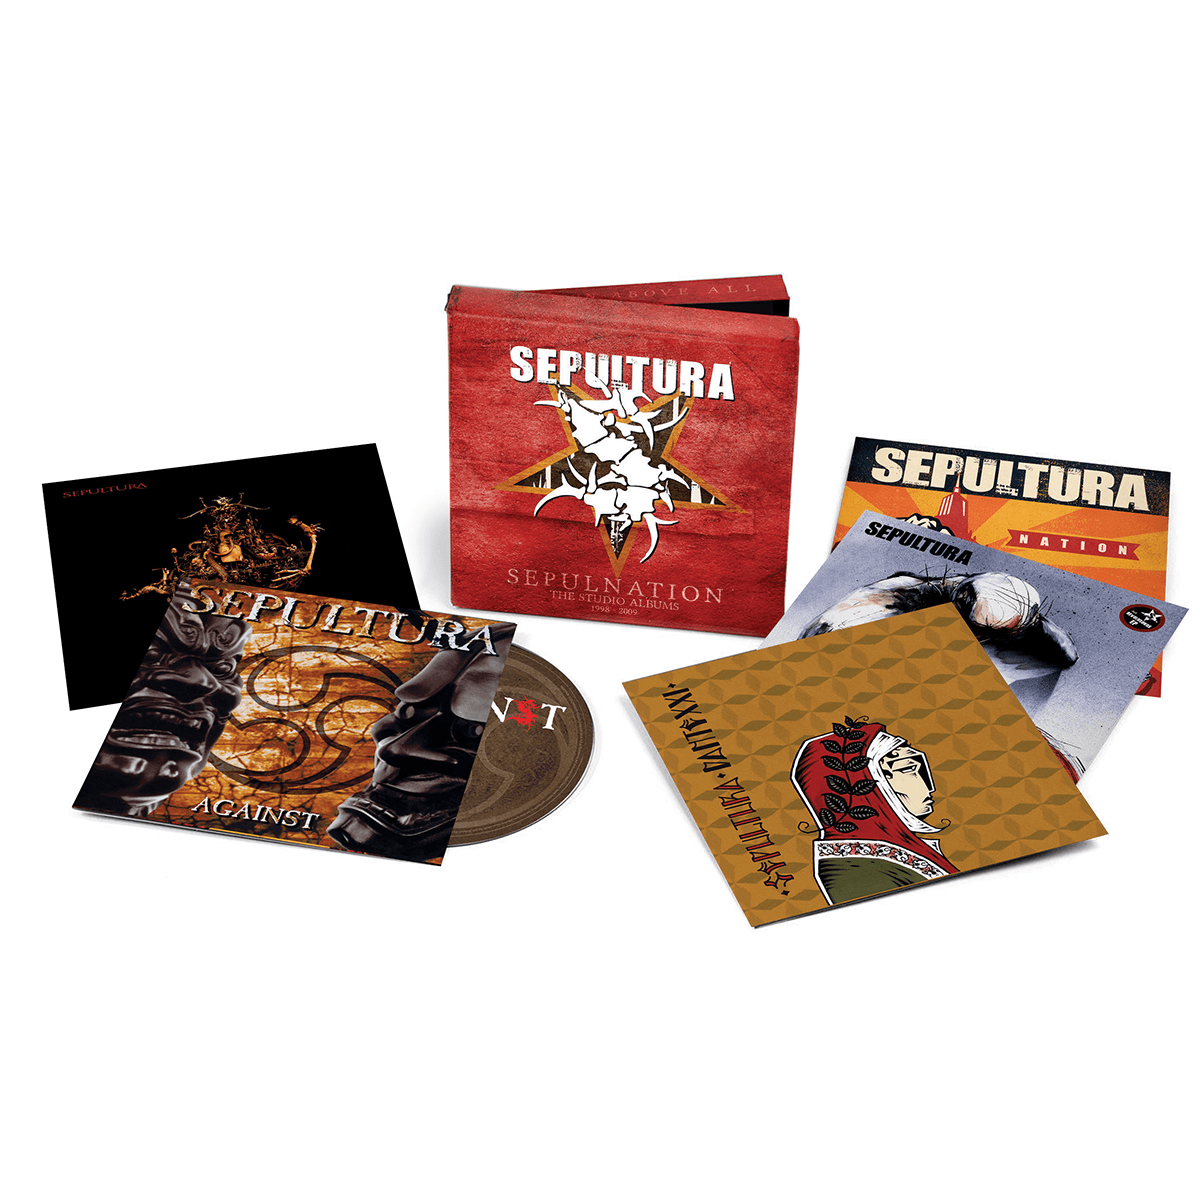 SEPULTURA - Sepulnation – The Studio Albums 1998 – 2009 - 5CD Clamshell Box Set